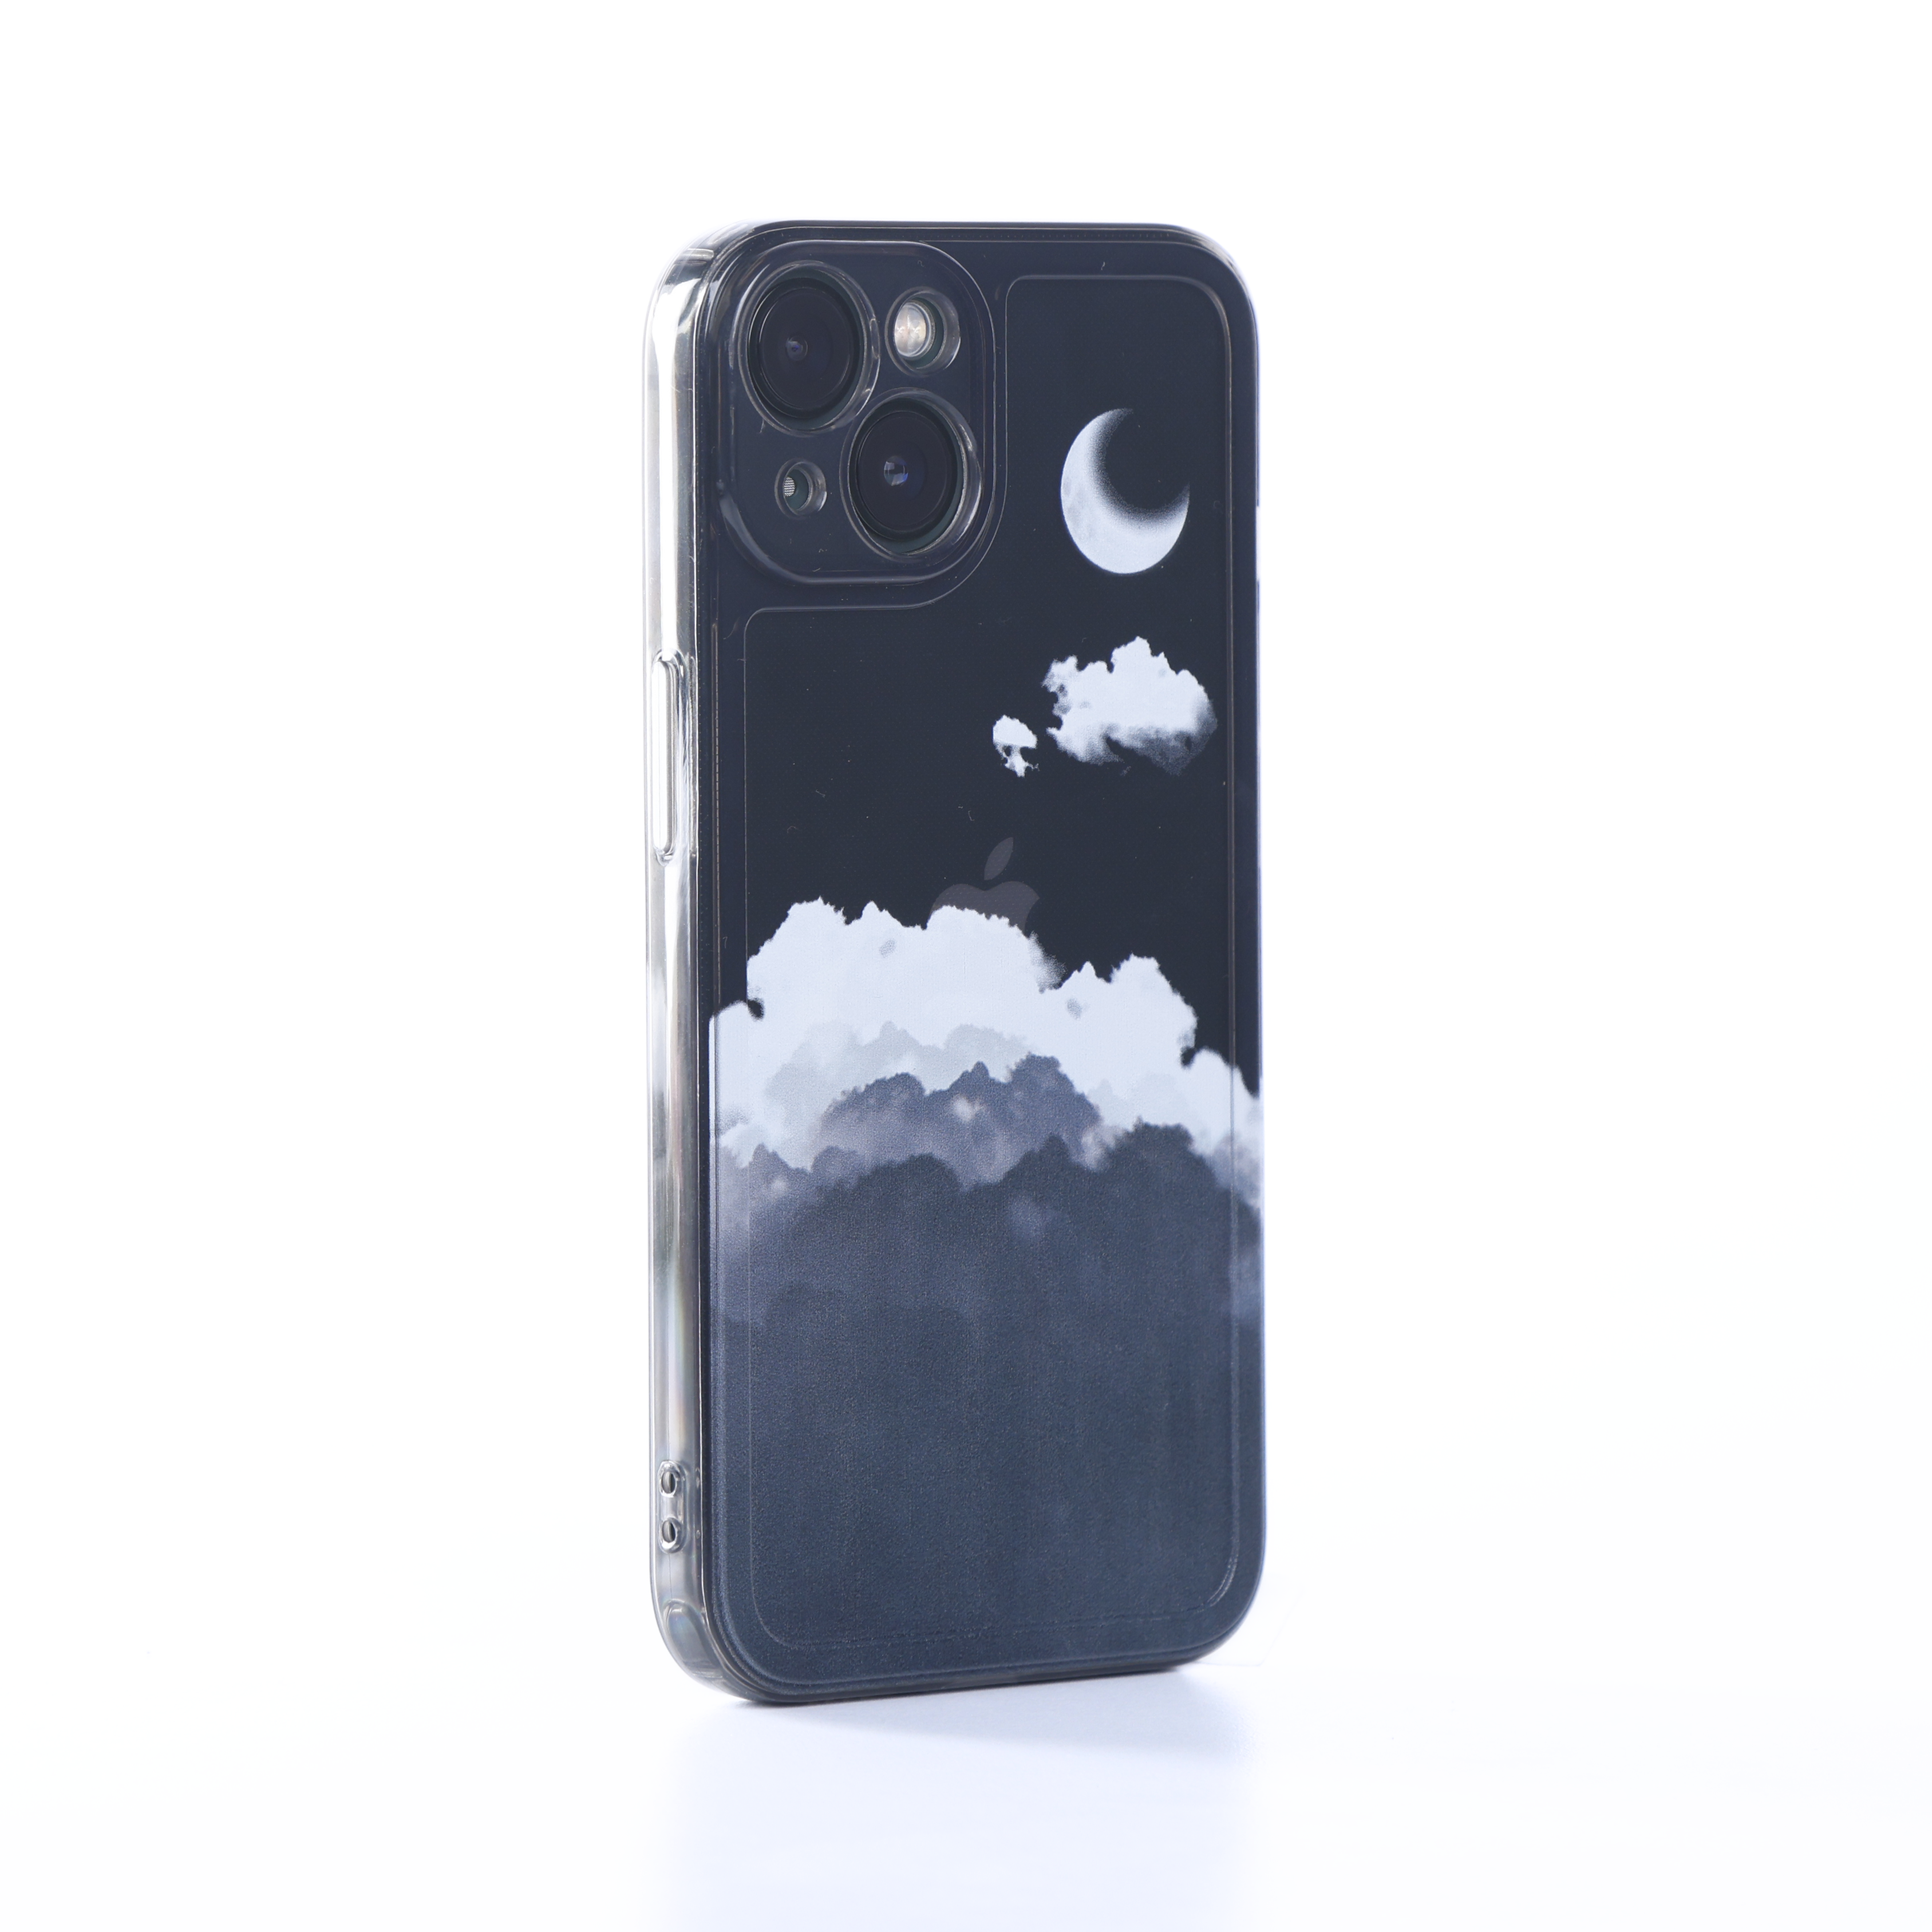 Black Night Moon iPhone Case